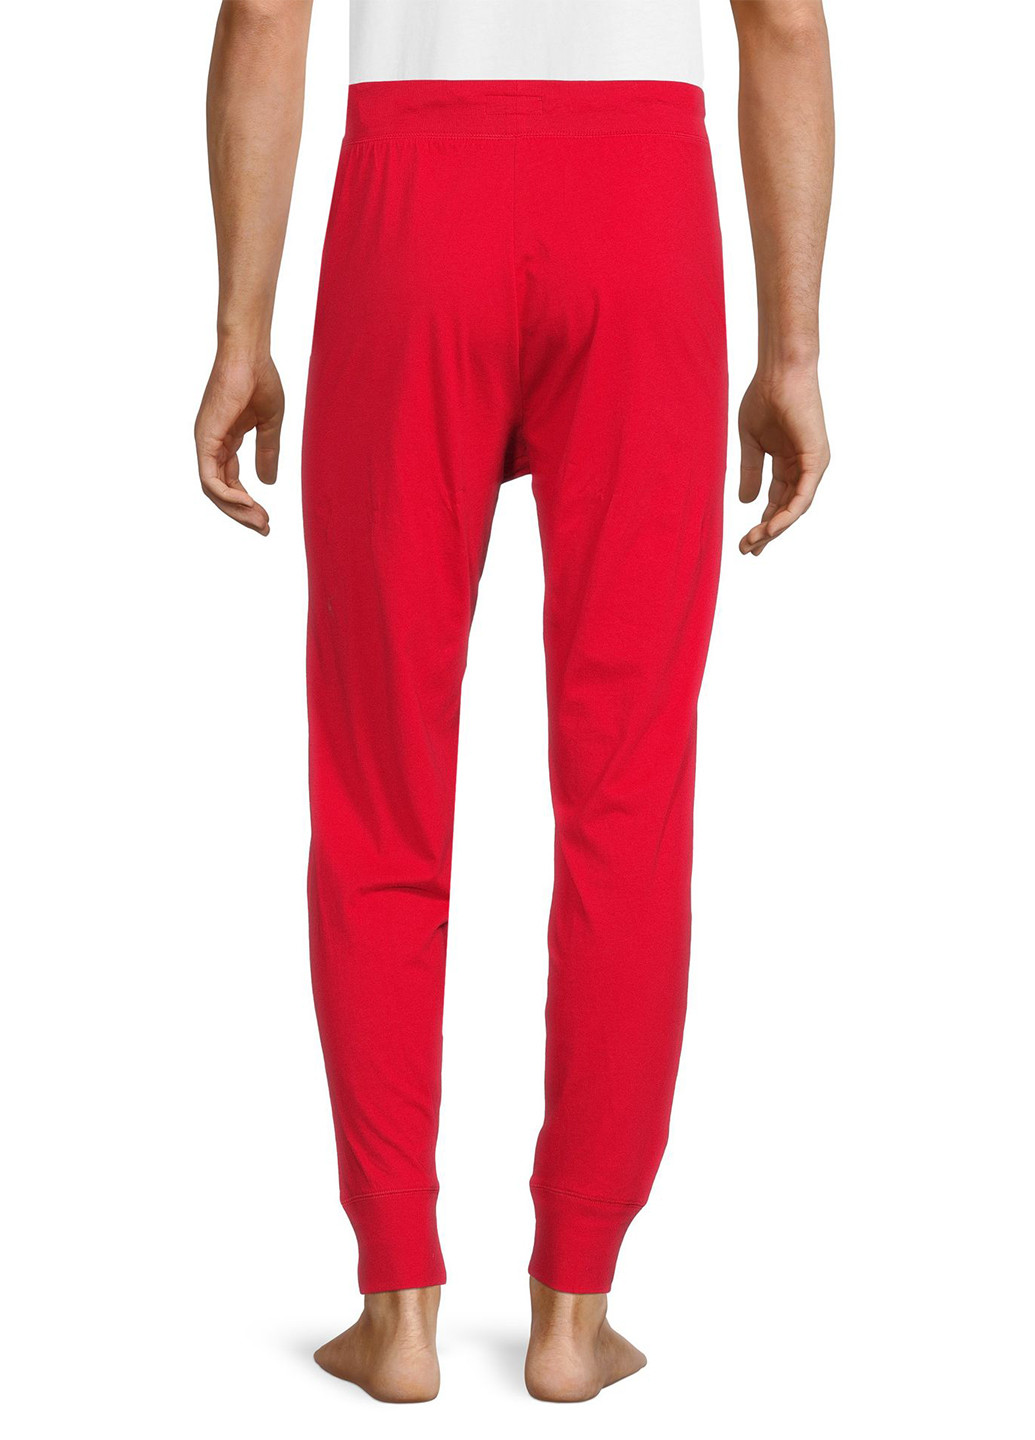 Красные спортивные демисезонные джоггеры брюки Ralph Lauren